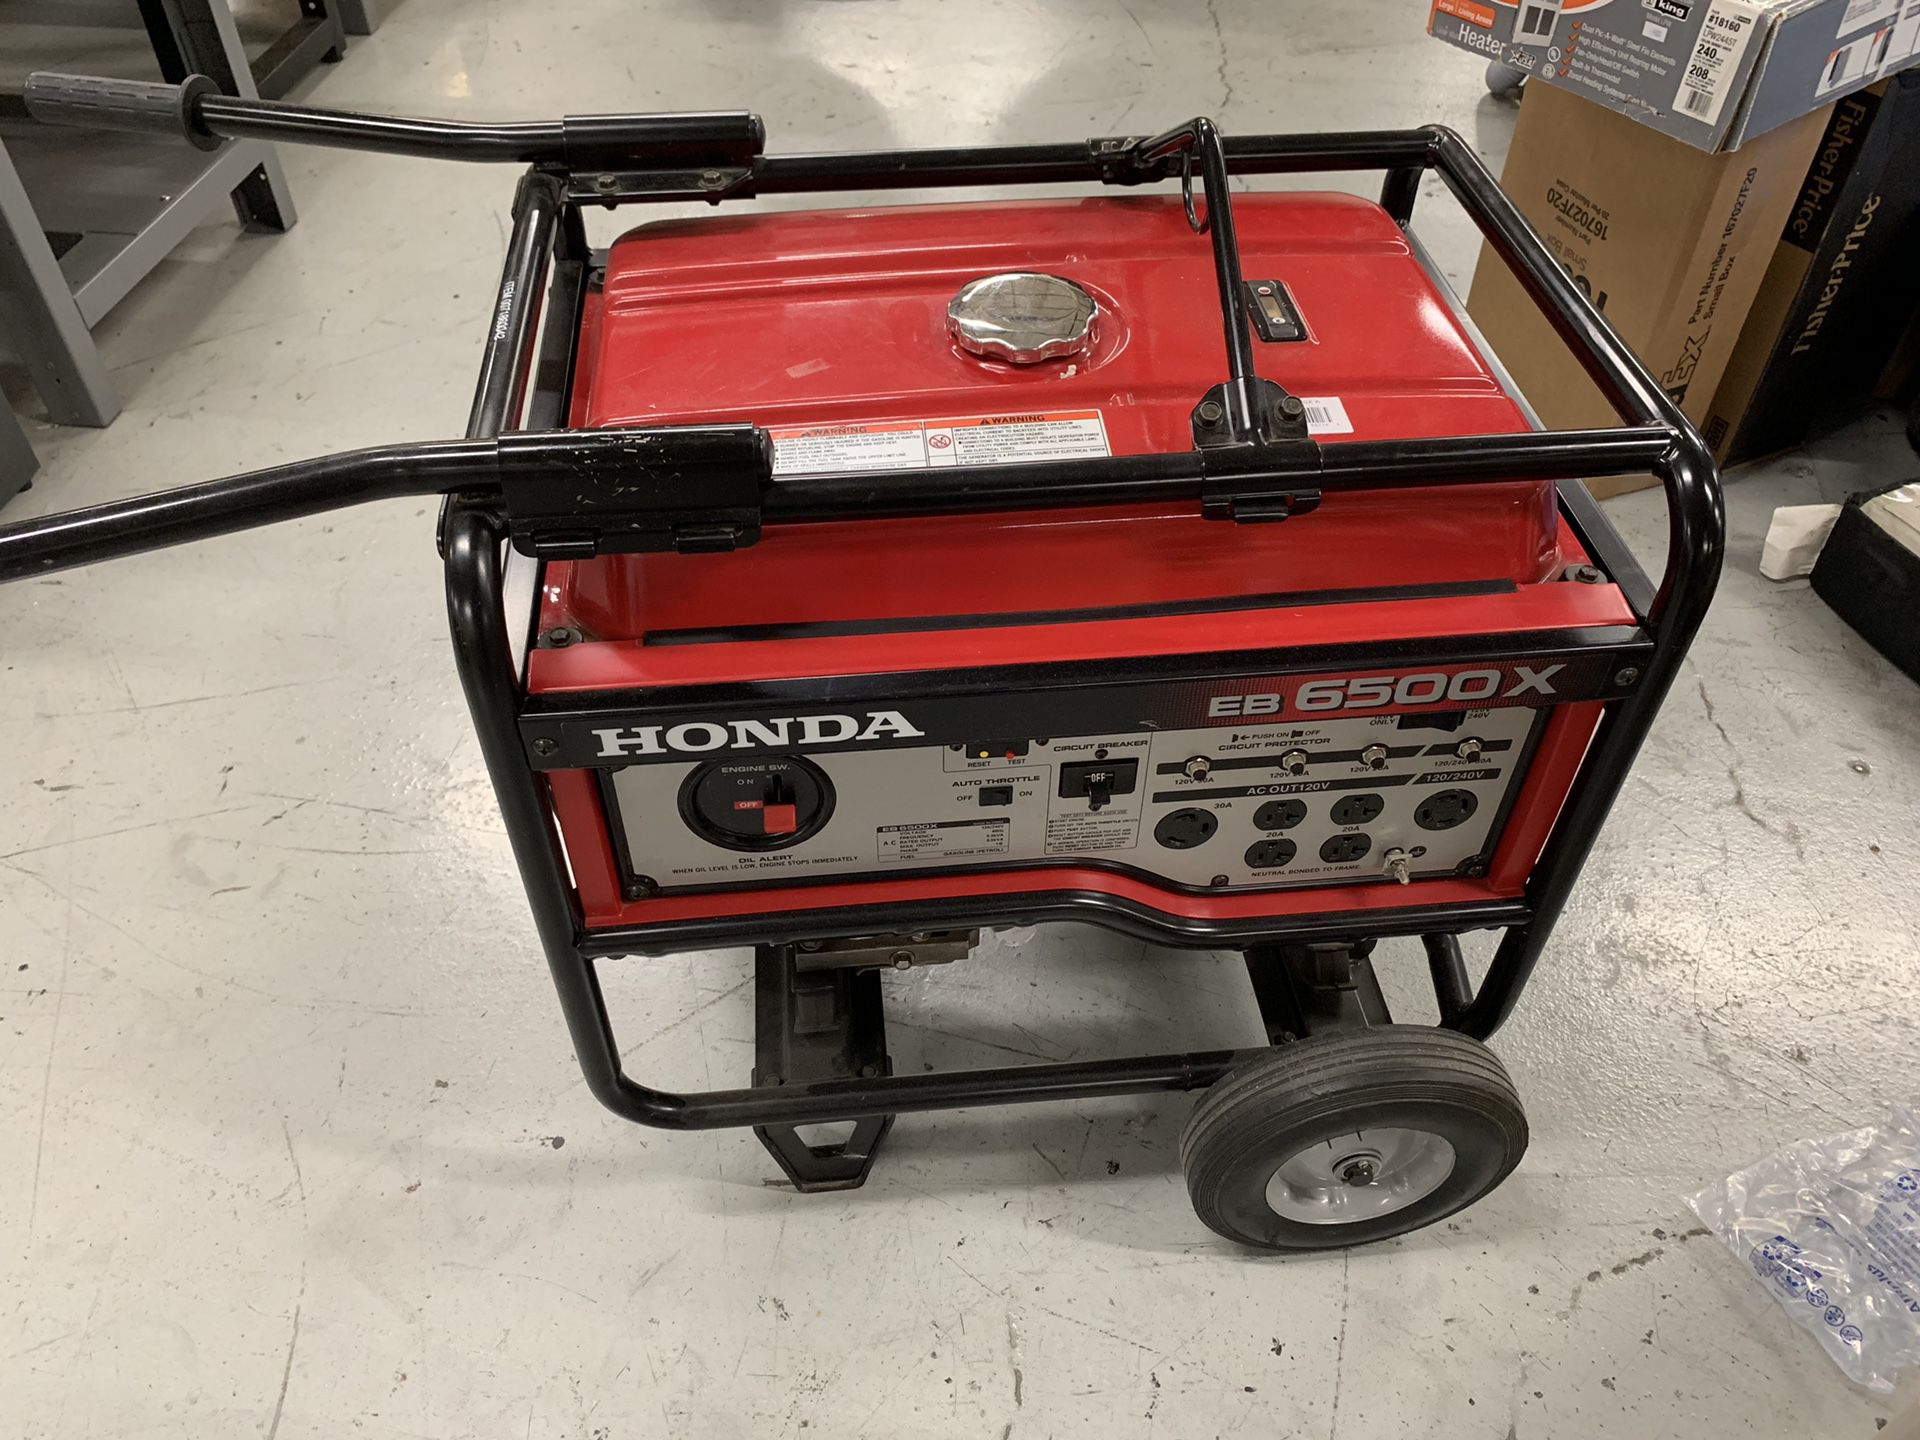 Honda EB 6500X Generator